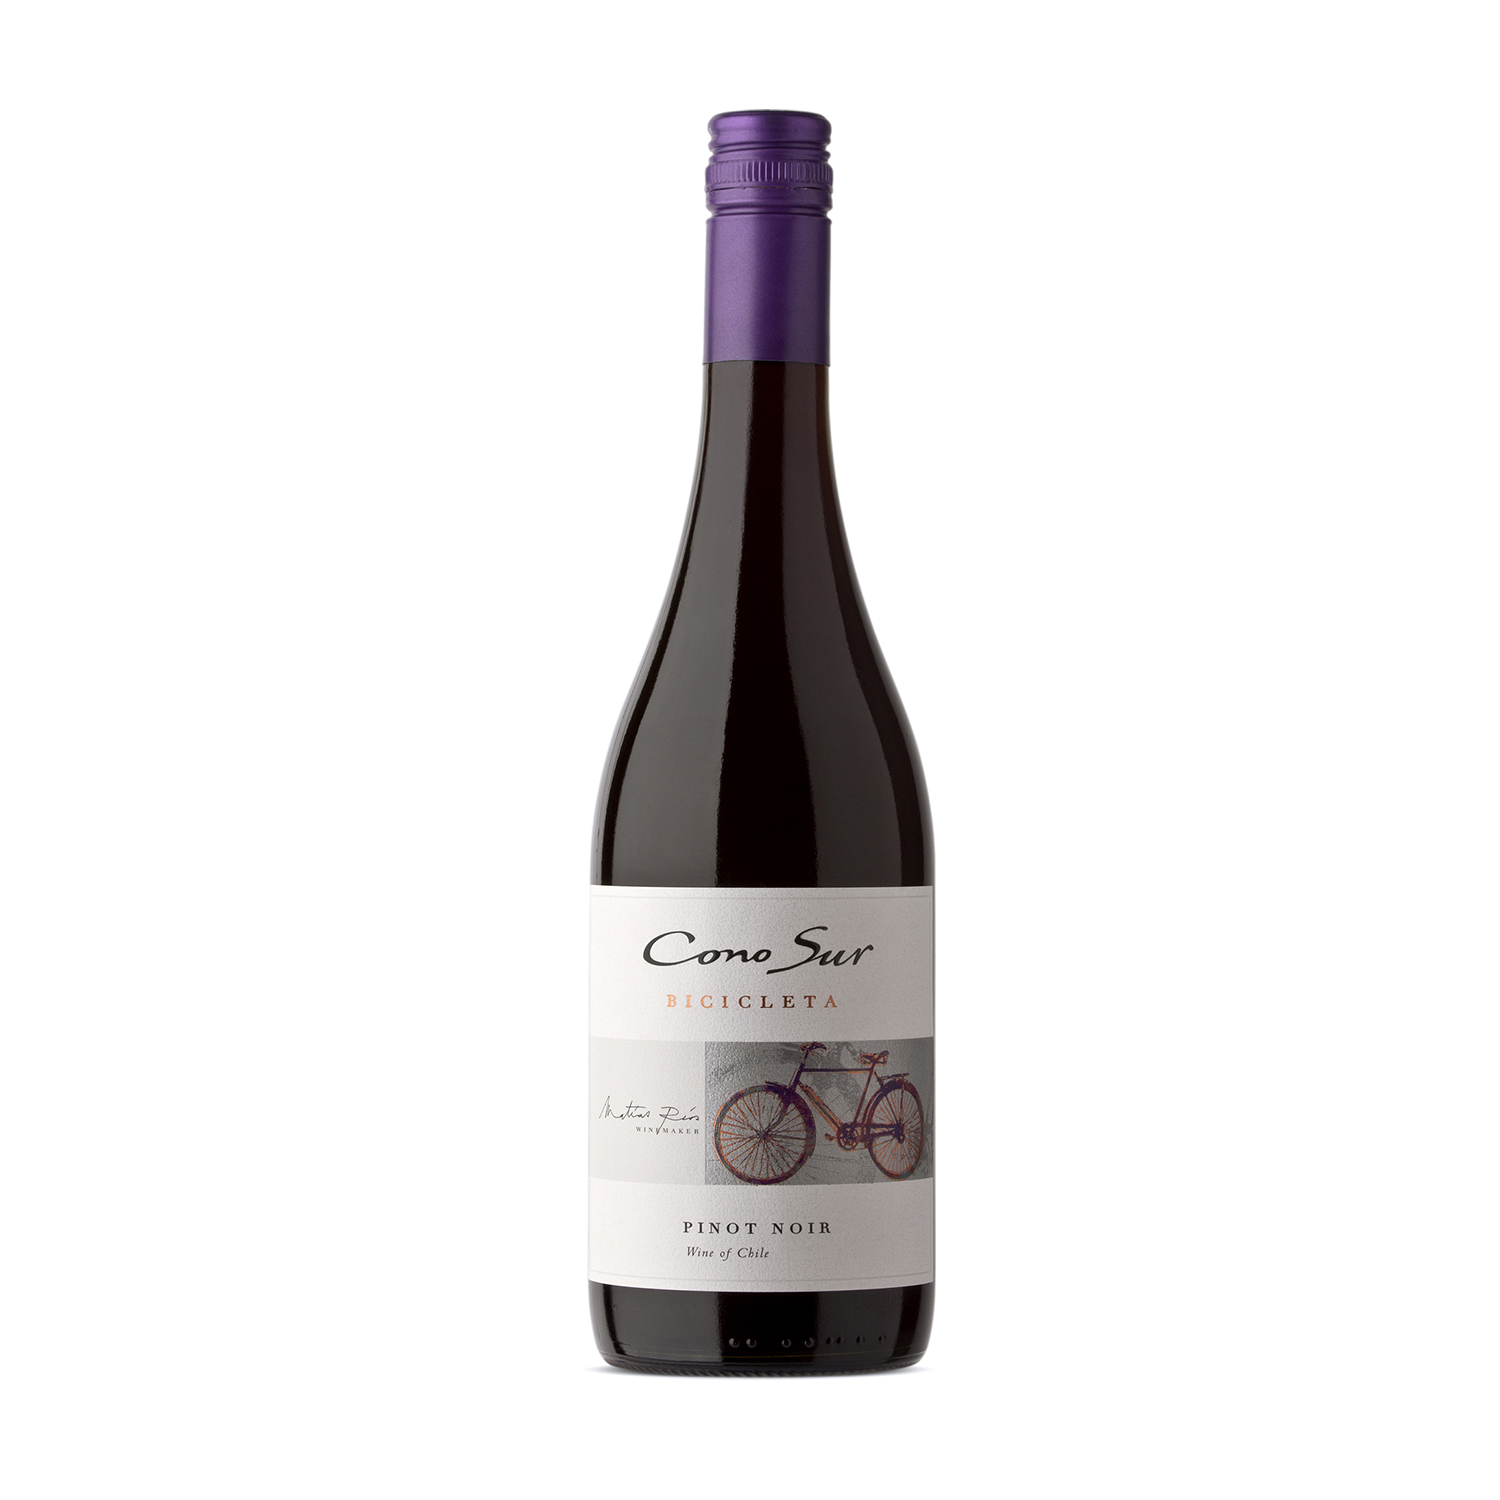 Vino Tinto Chile Pinot Noir Bicicleta Botella 750 Ml